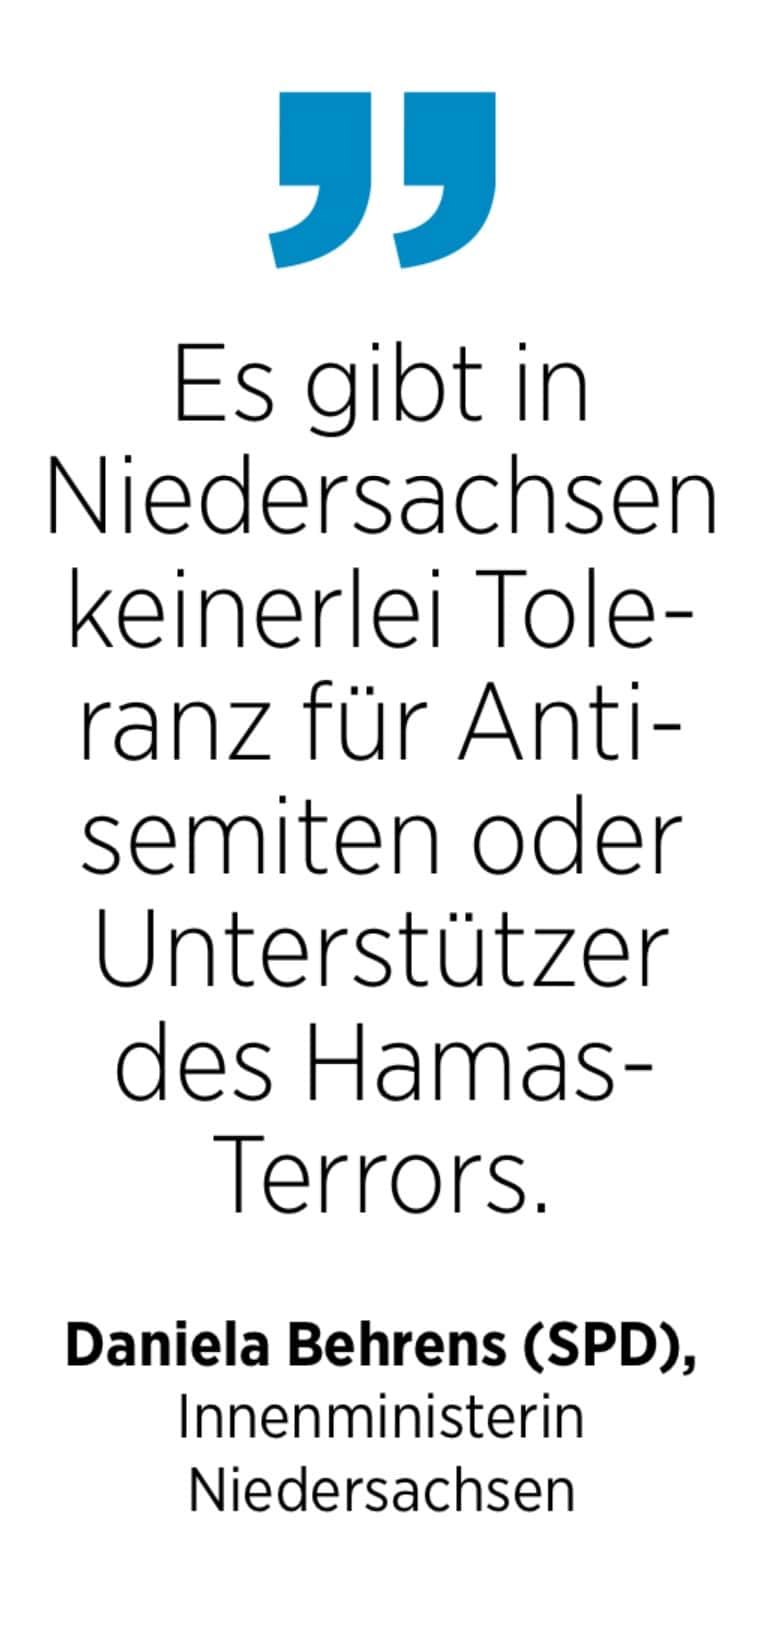 Daniela Behrens (SPD), Innenministerin Niedersachsen: Es gibt in Niedersachsen keinerlei Toleranz für Antisemiten oder Unterstützer des Hamas-Terrors.